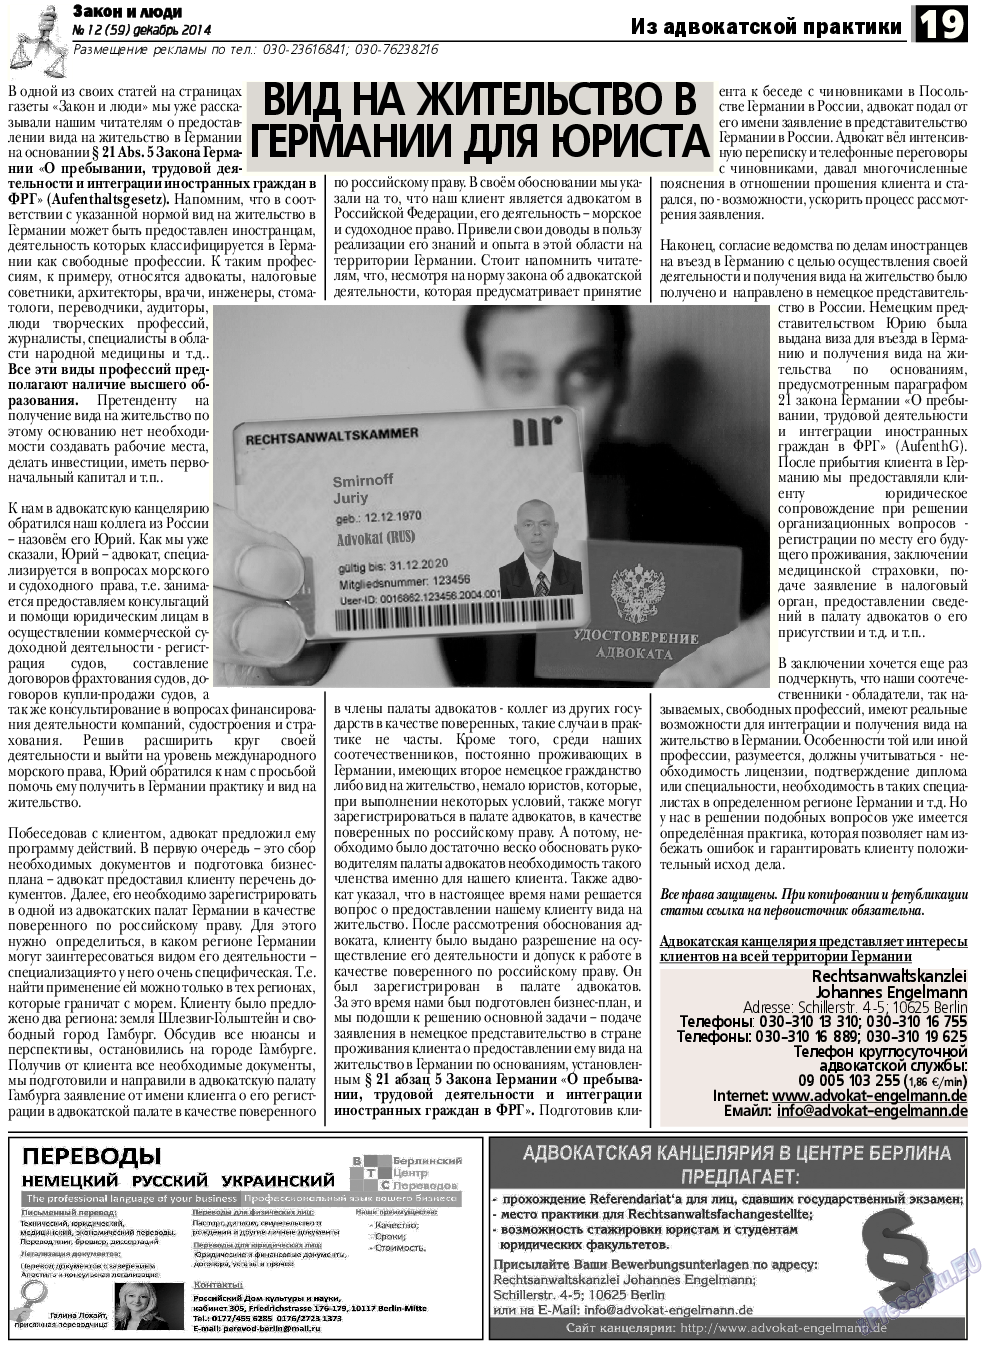 Закон и люди, газета. 2014 №12 стр.19